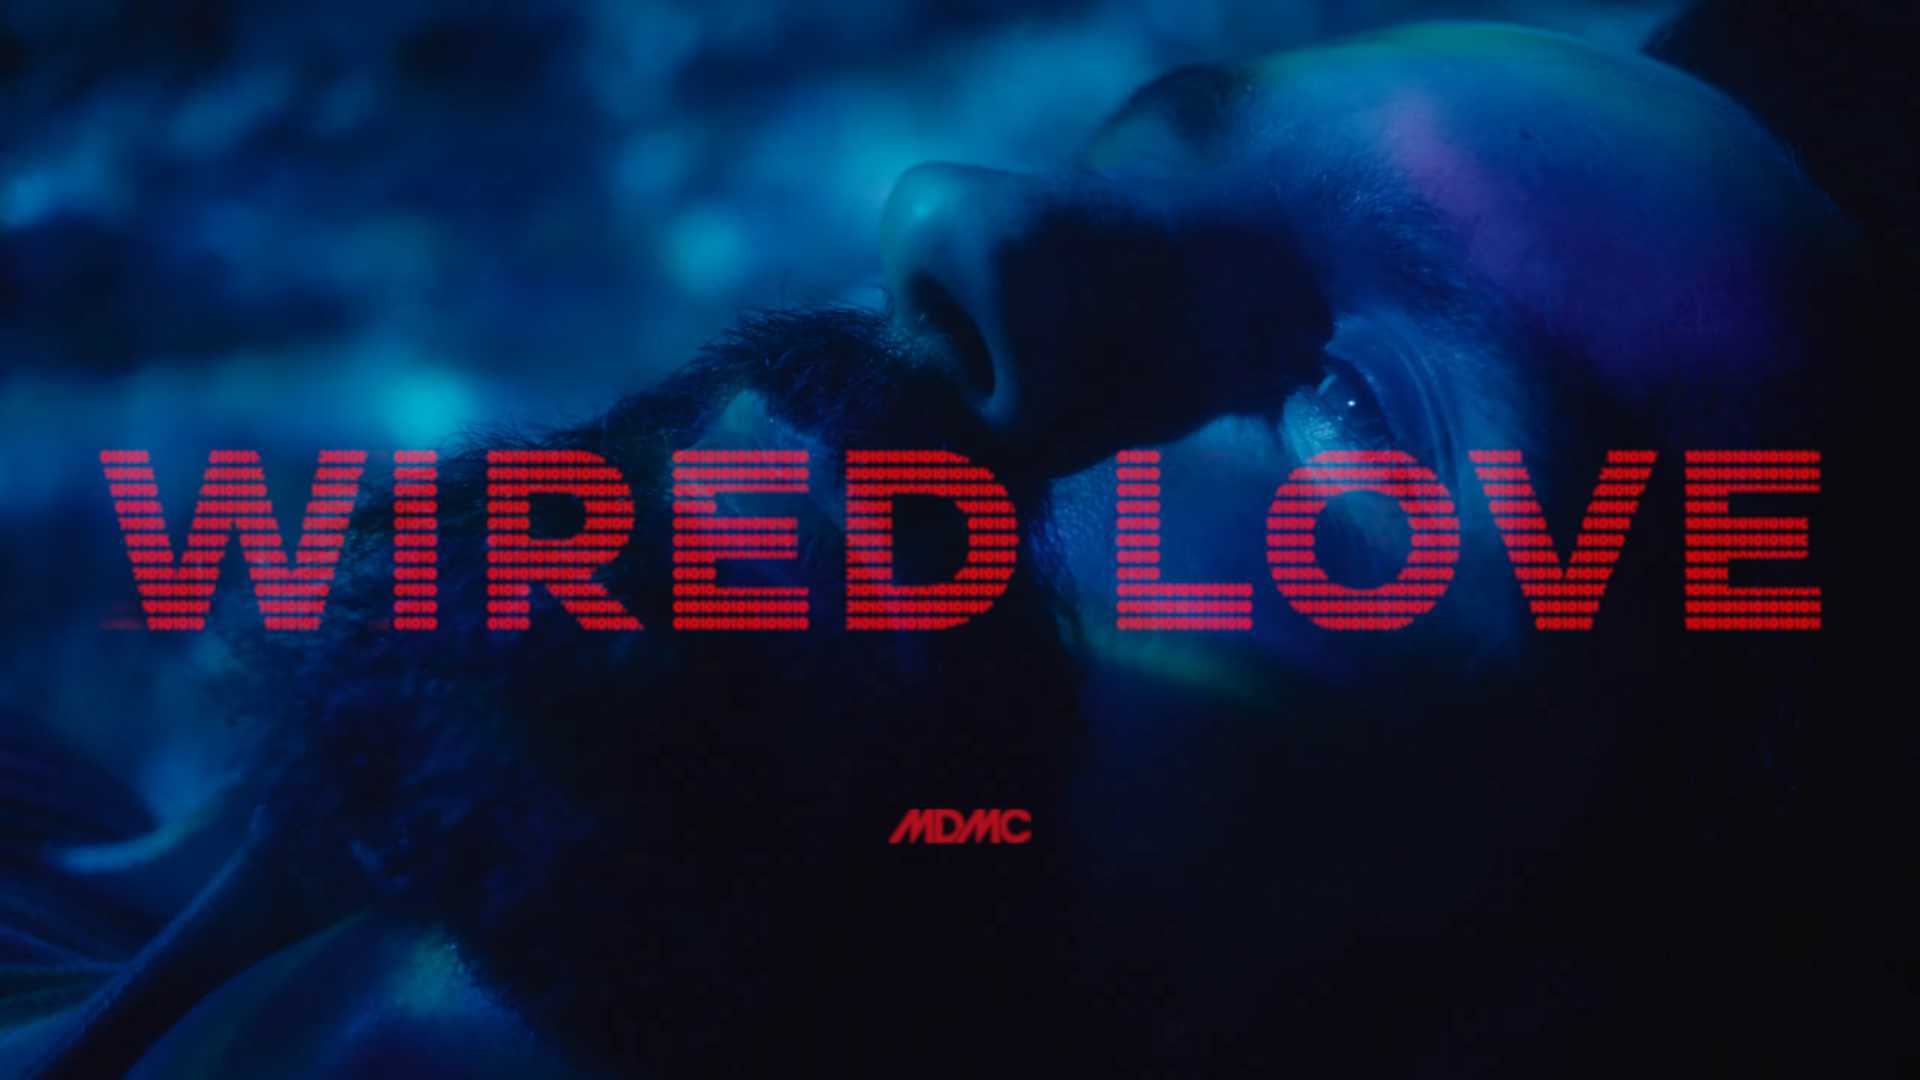 MDMC - Wired Love